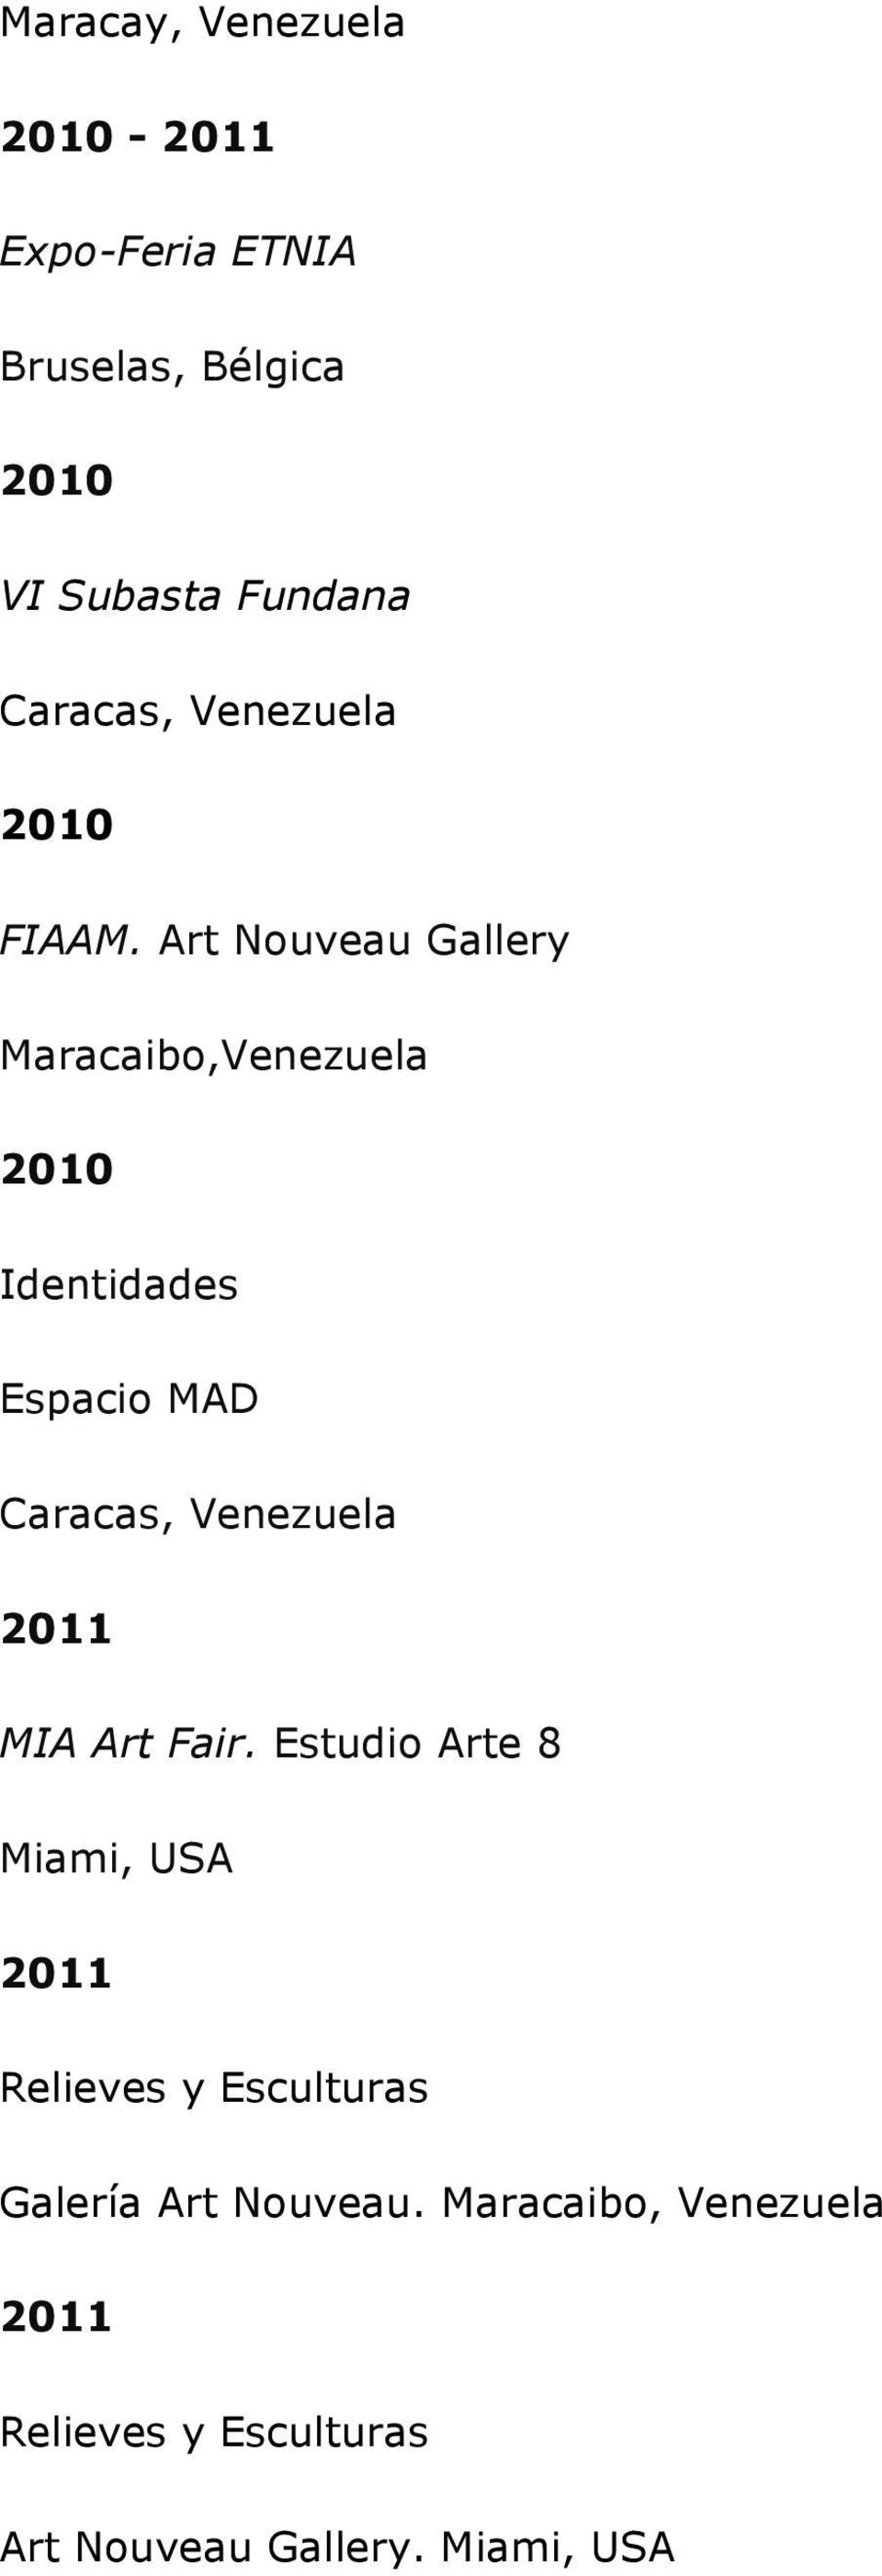 Art Nouveau Gallery Maracaibo,Venezuela Identidades Espacio MAD MIA Art